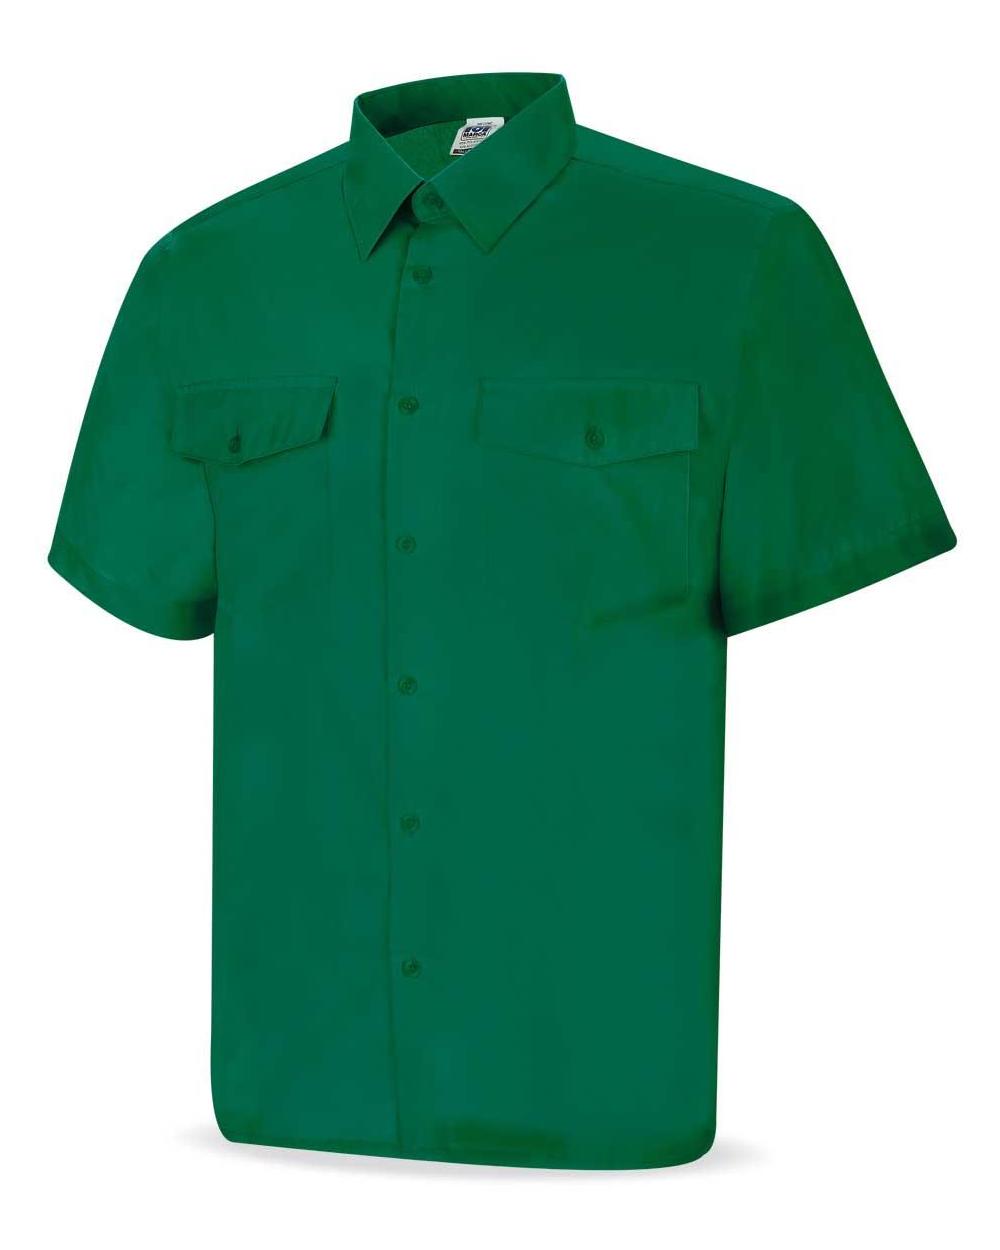 Comprar Camisa Tergal Verde M/Corta 388-Cvmc barato